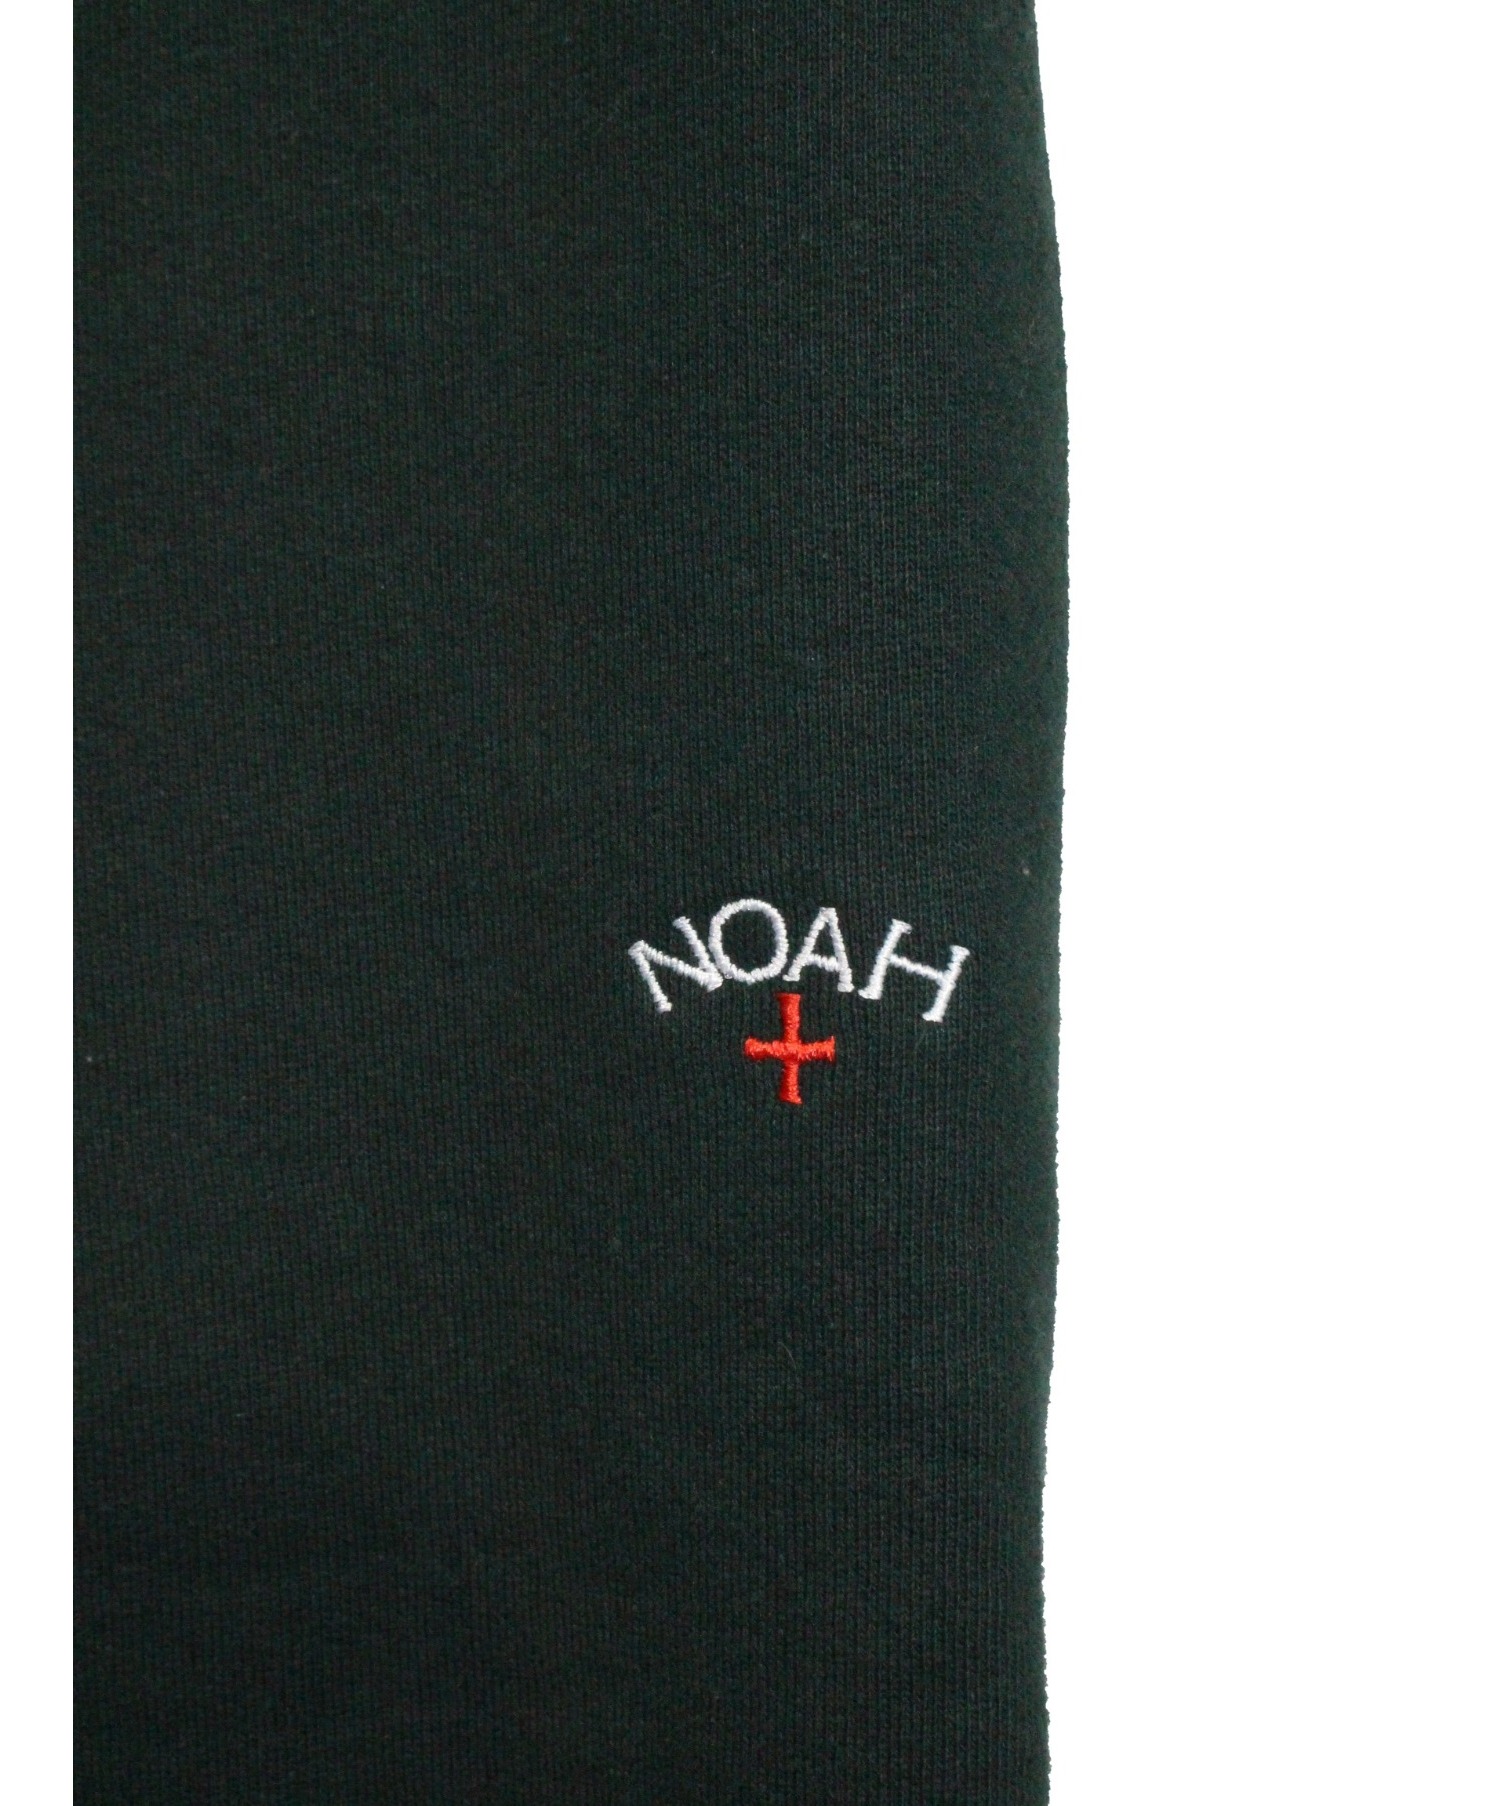 Noah (ノア) スウェットパンツ グリーン サイズ:XS